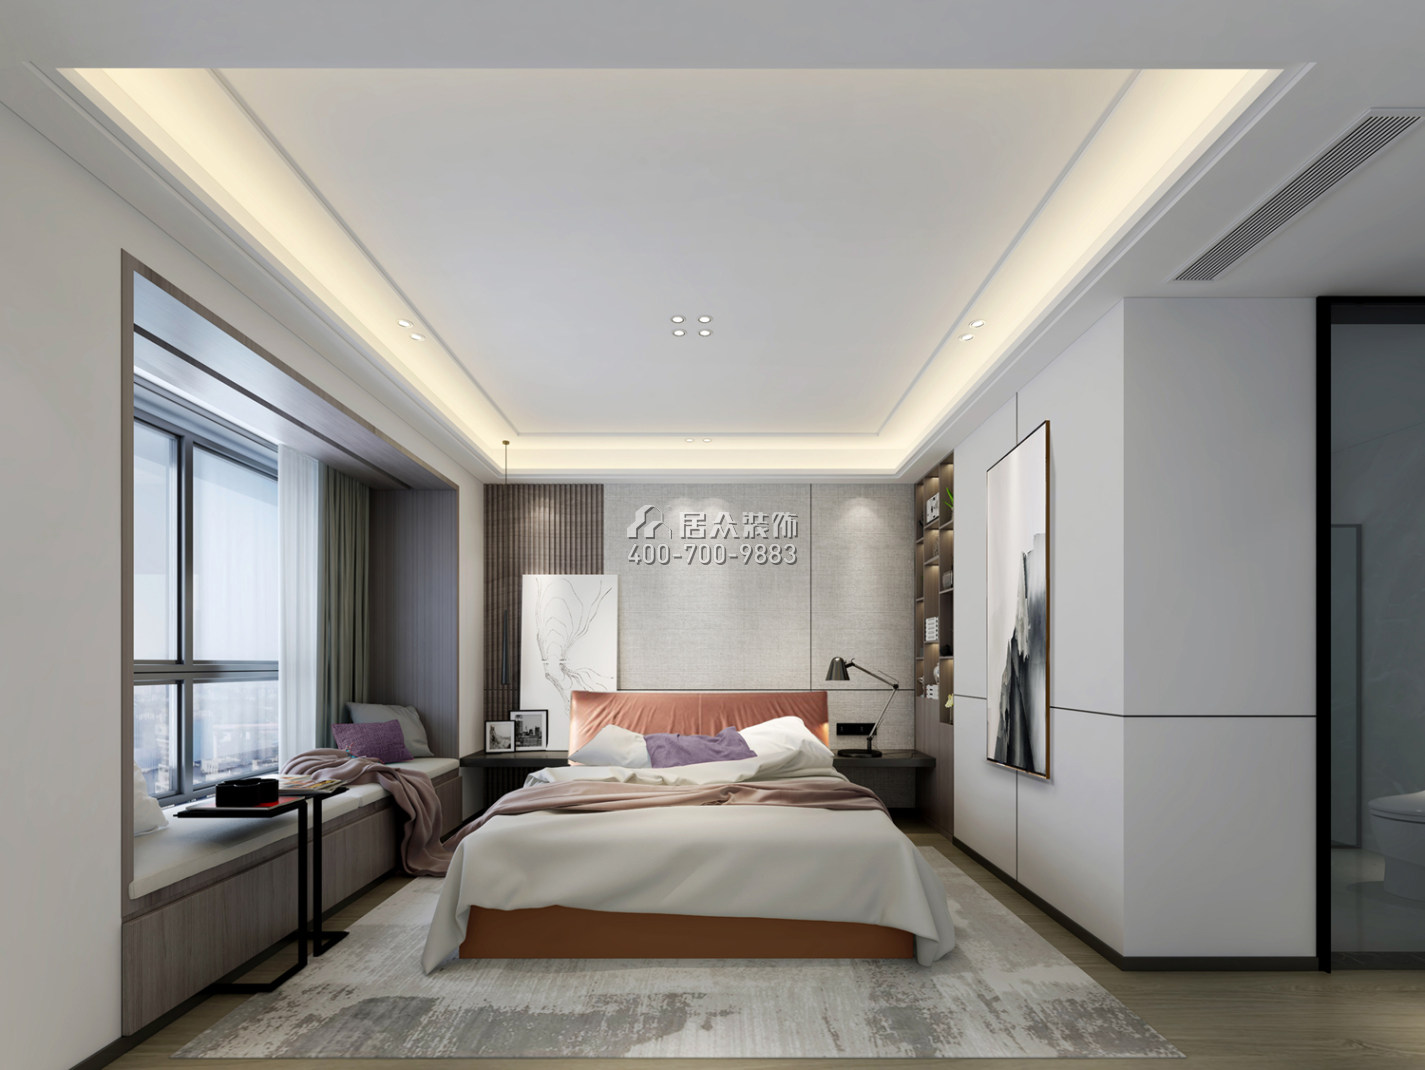 壹方商业中心二期342平方米中式风格平层户型卧室装修效果图